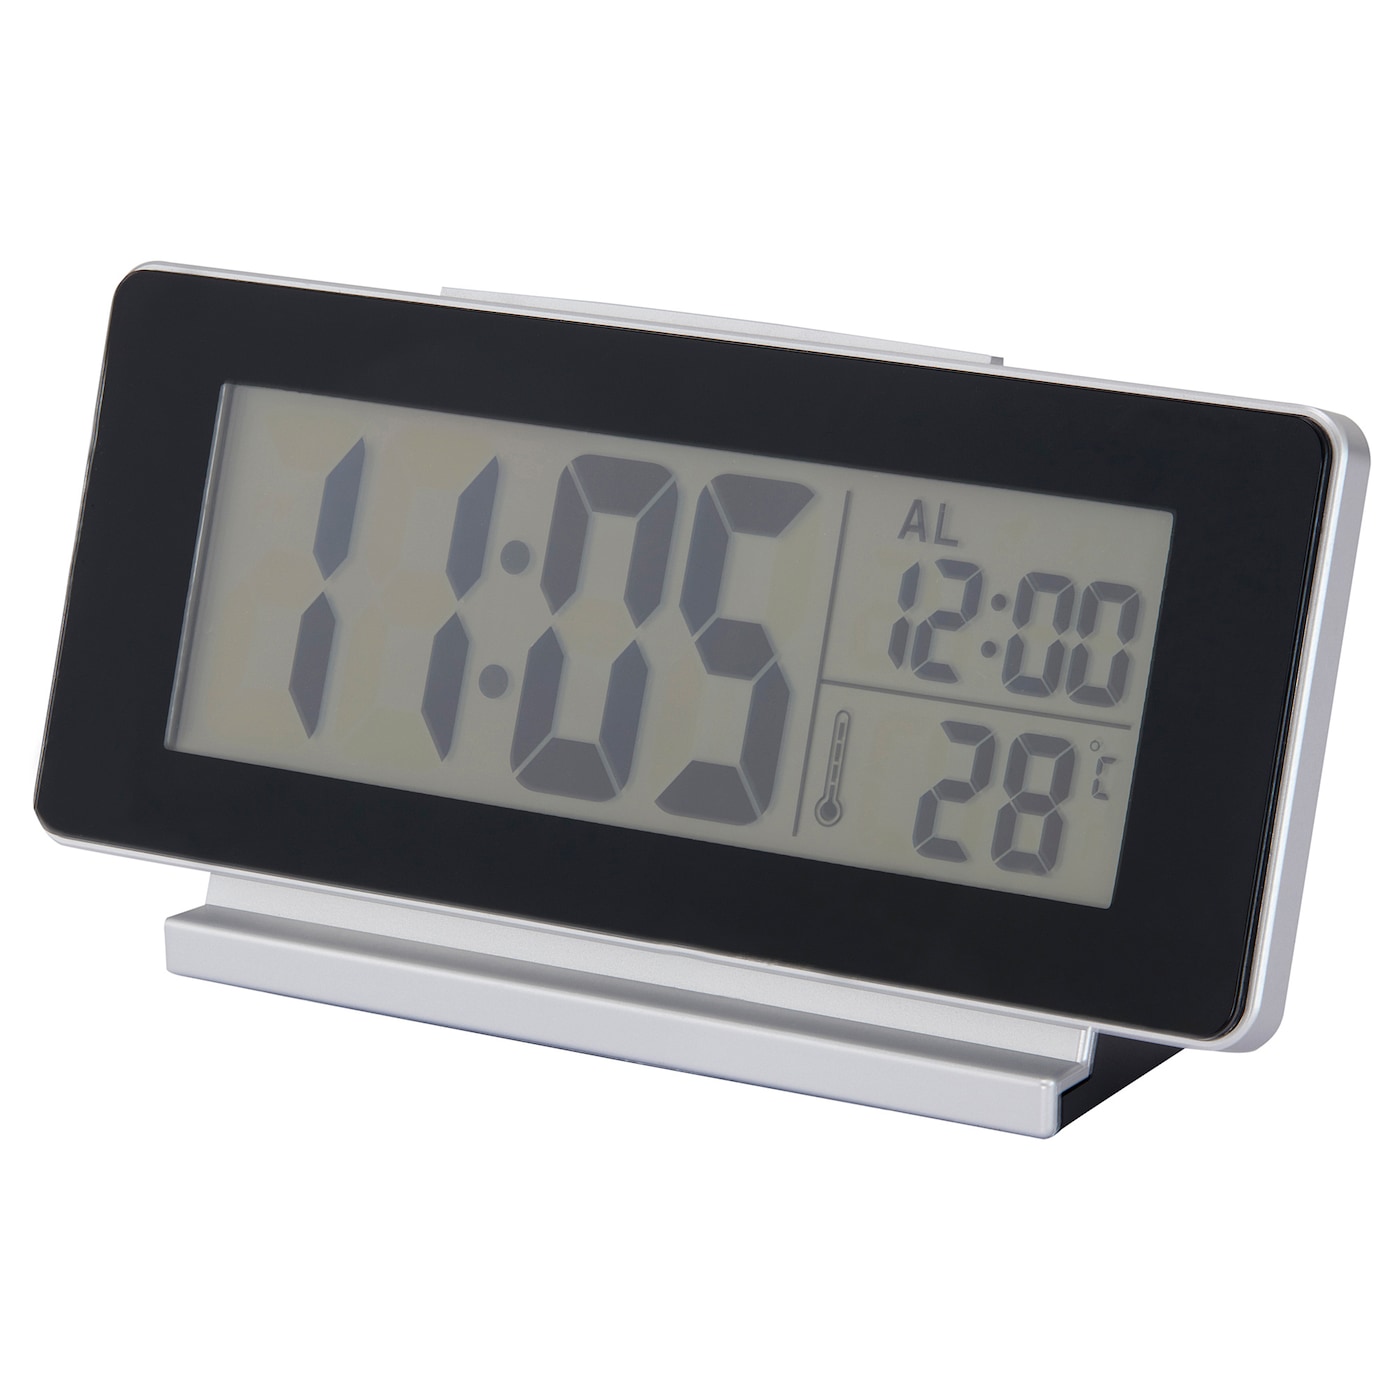 FILMIS Часы/термометр/будильник, низкое напряжение/черный, 16,5x9 см IKEA